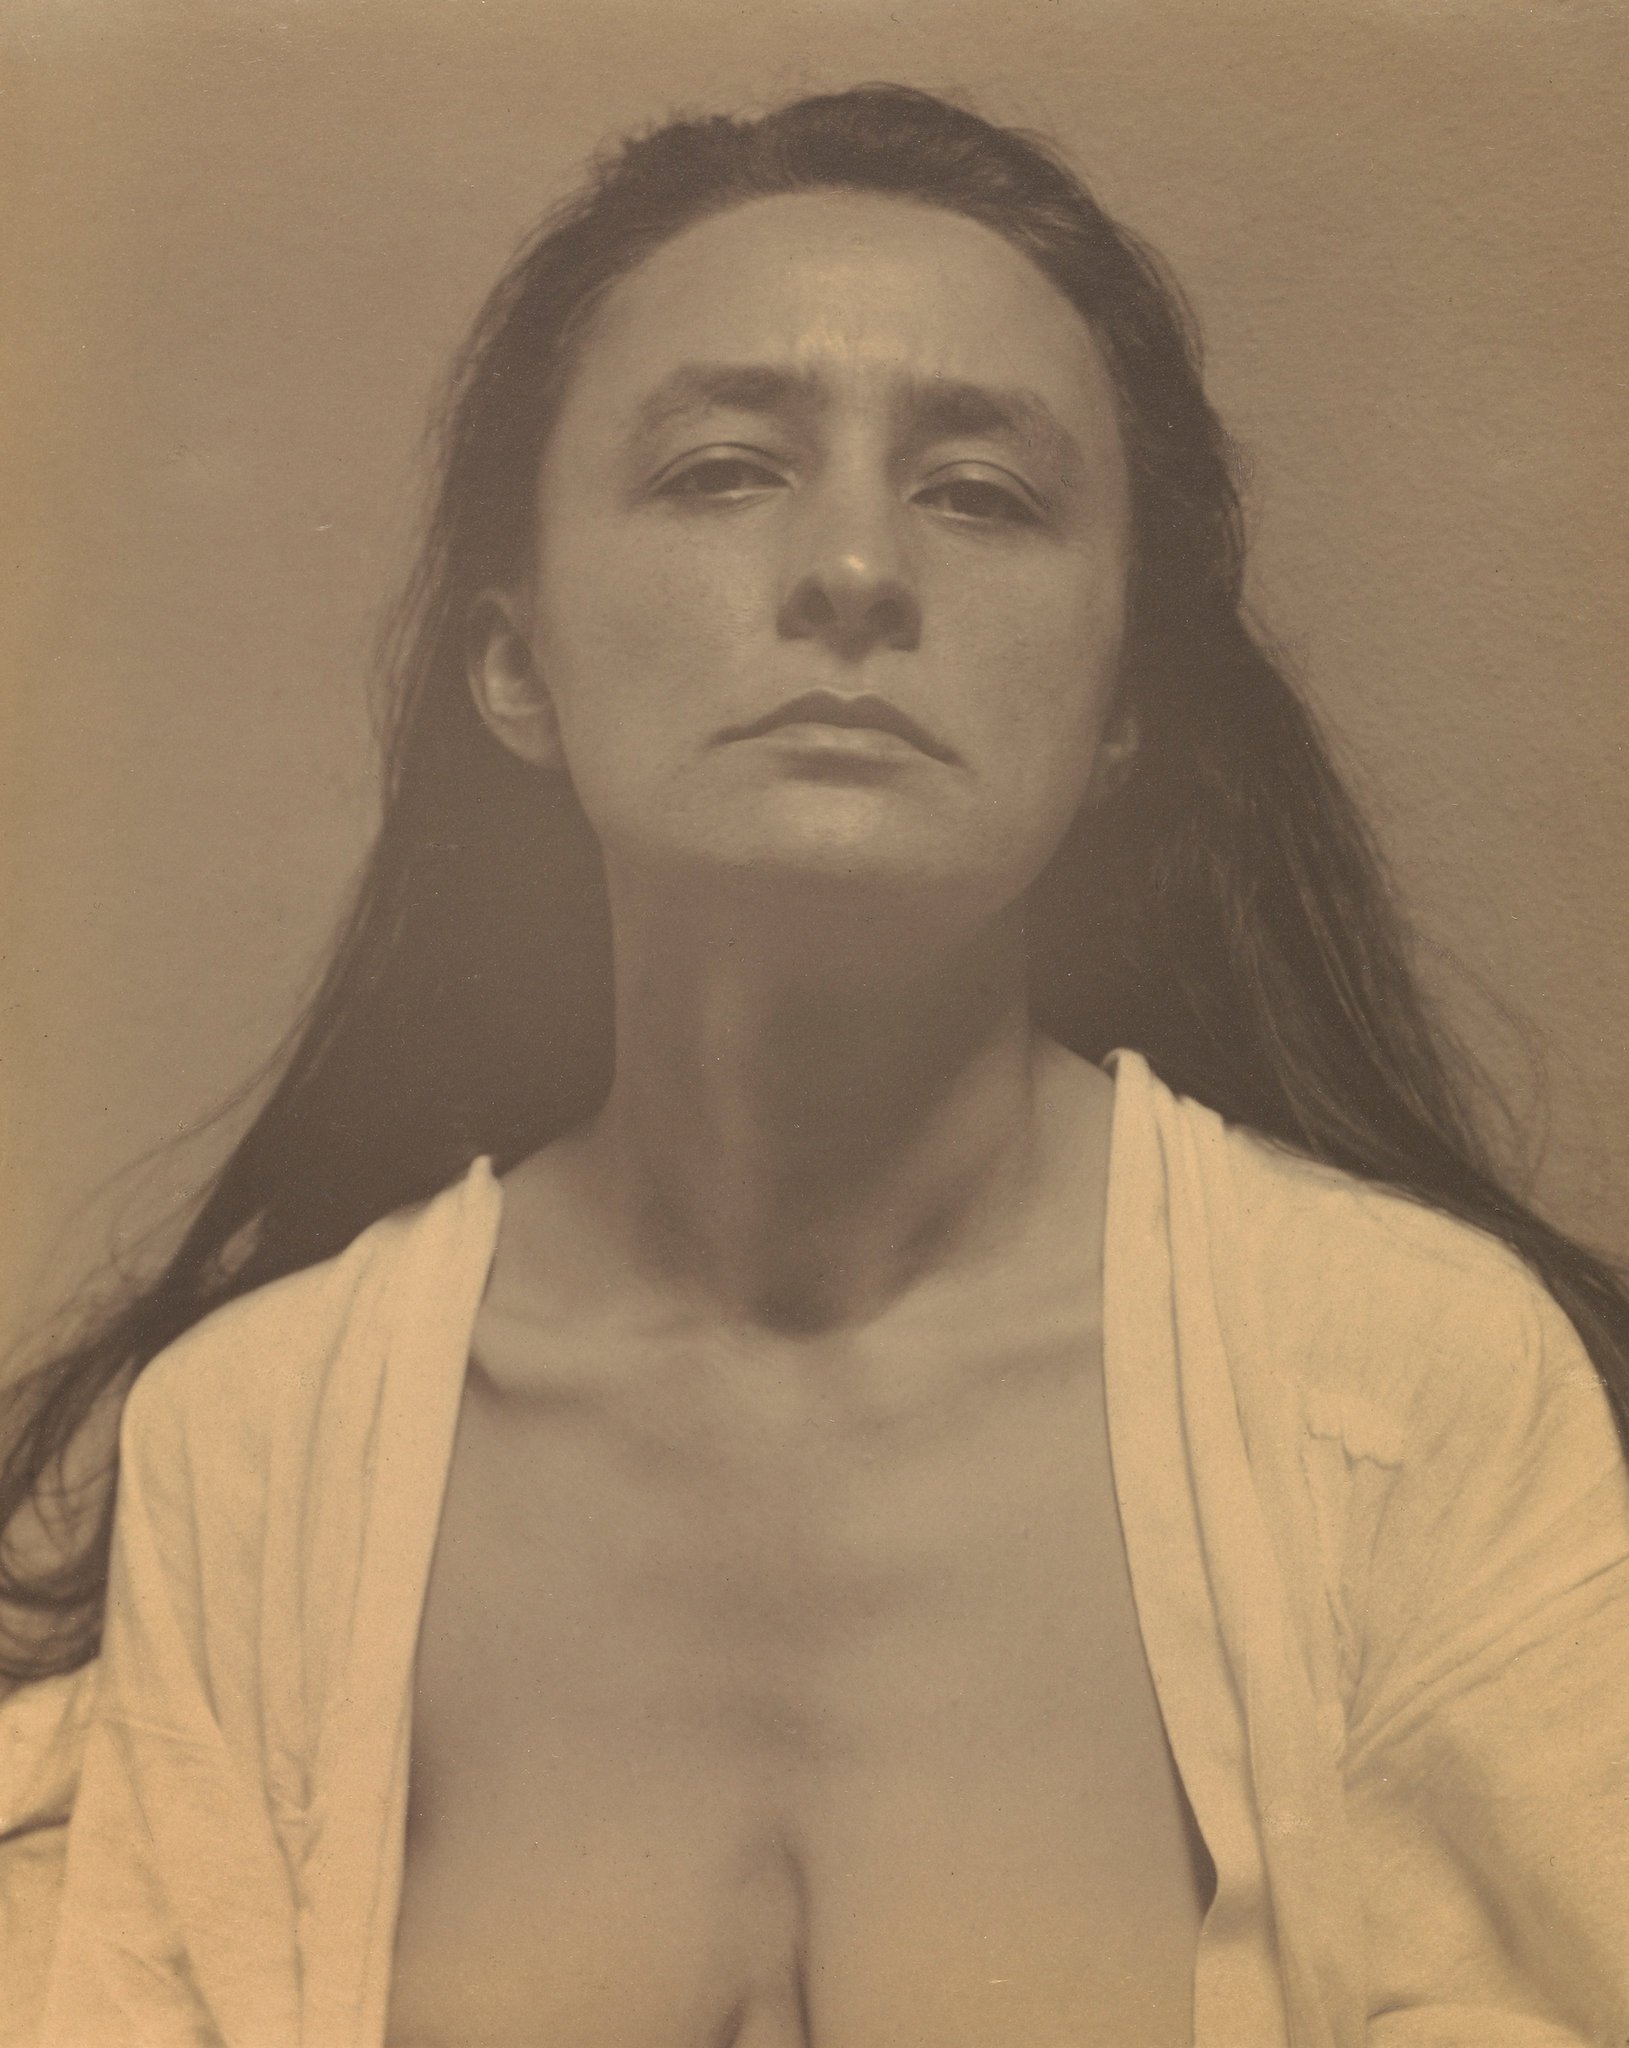 Georgia O'Keeffe by Alfred Stieglitz